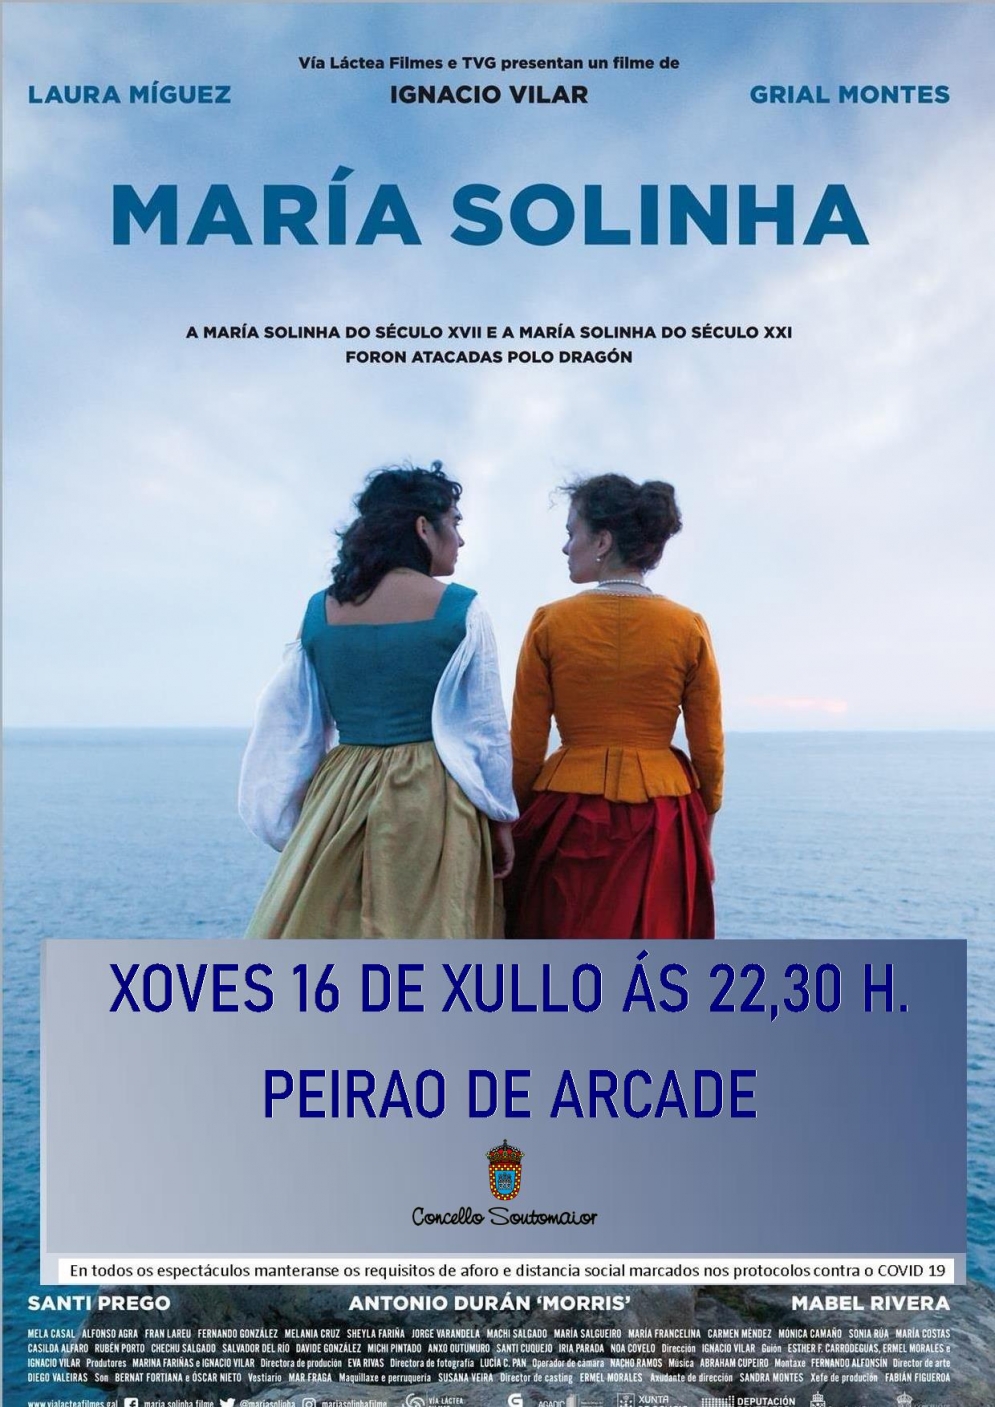 Maria Solinha